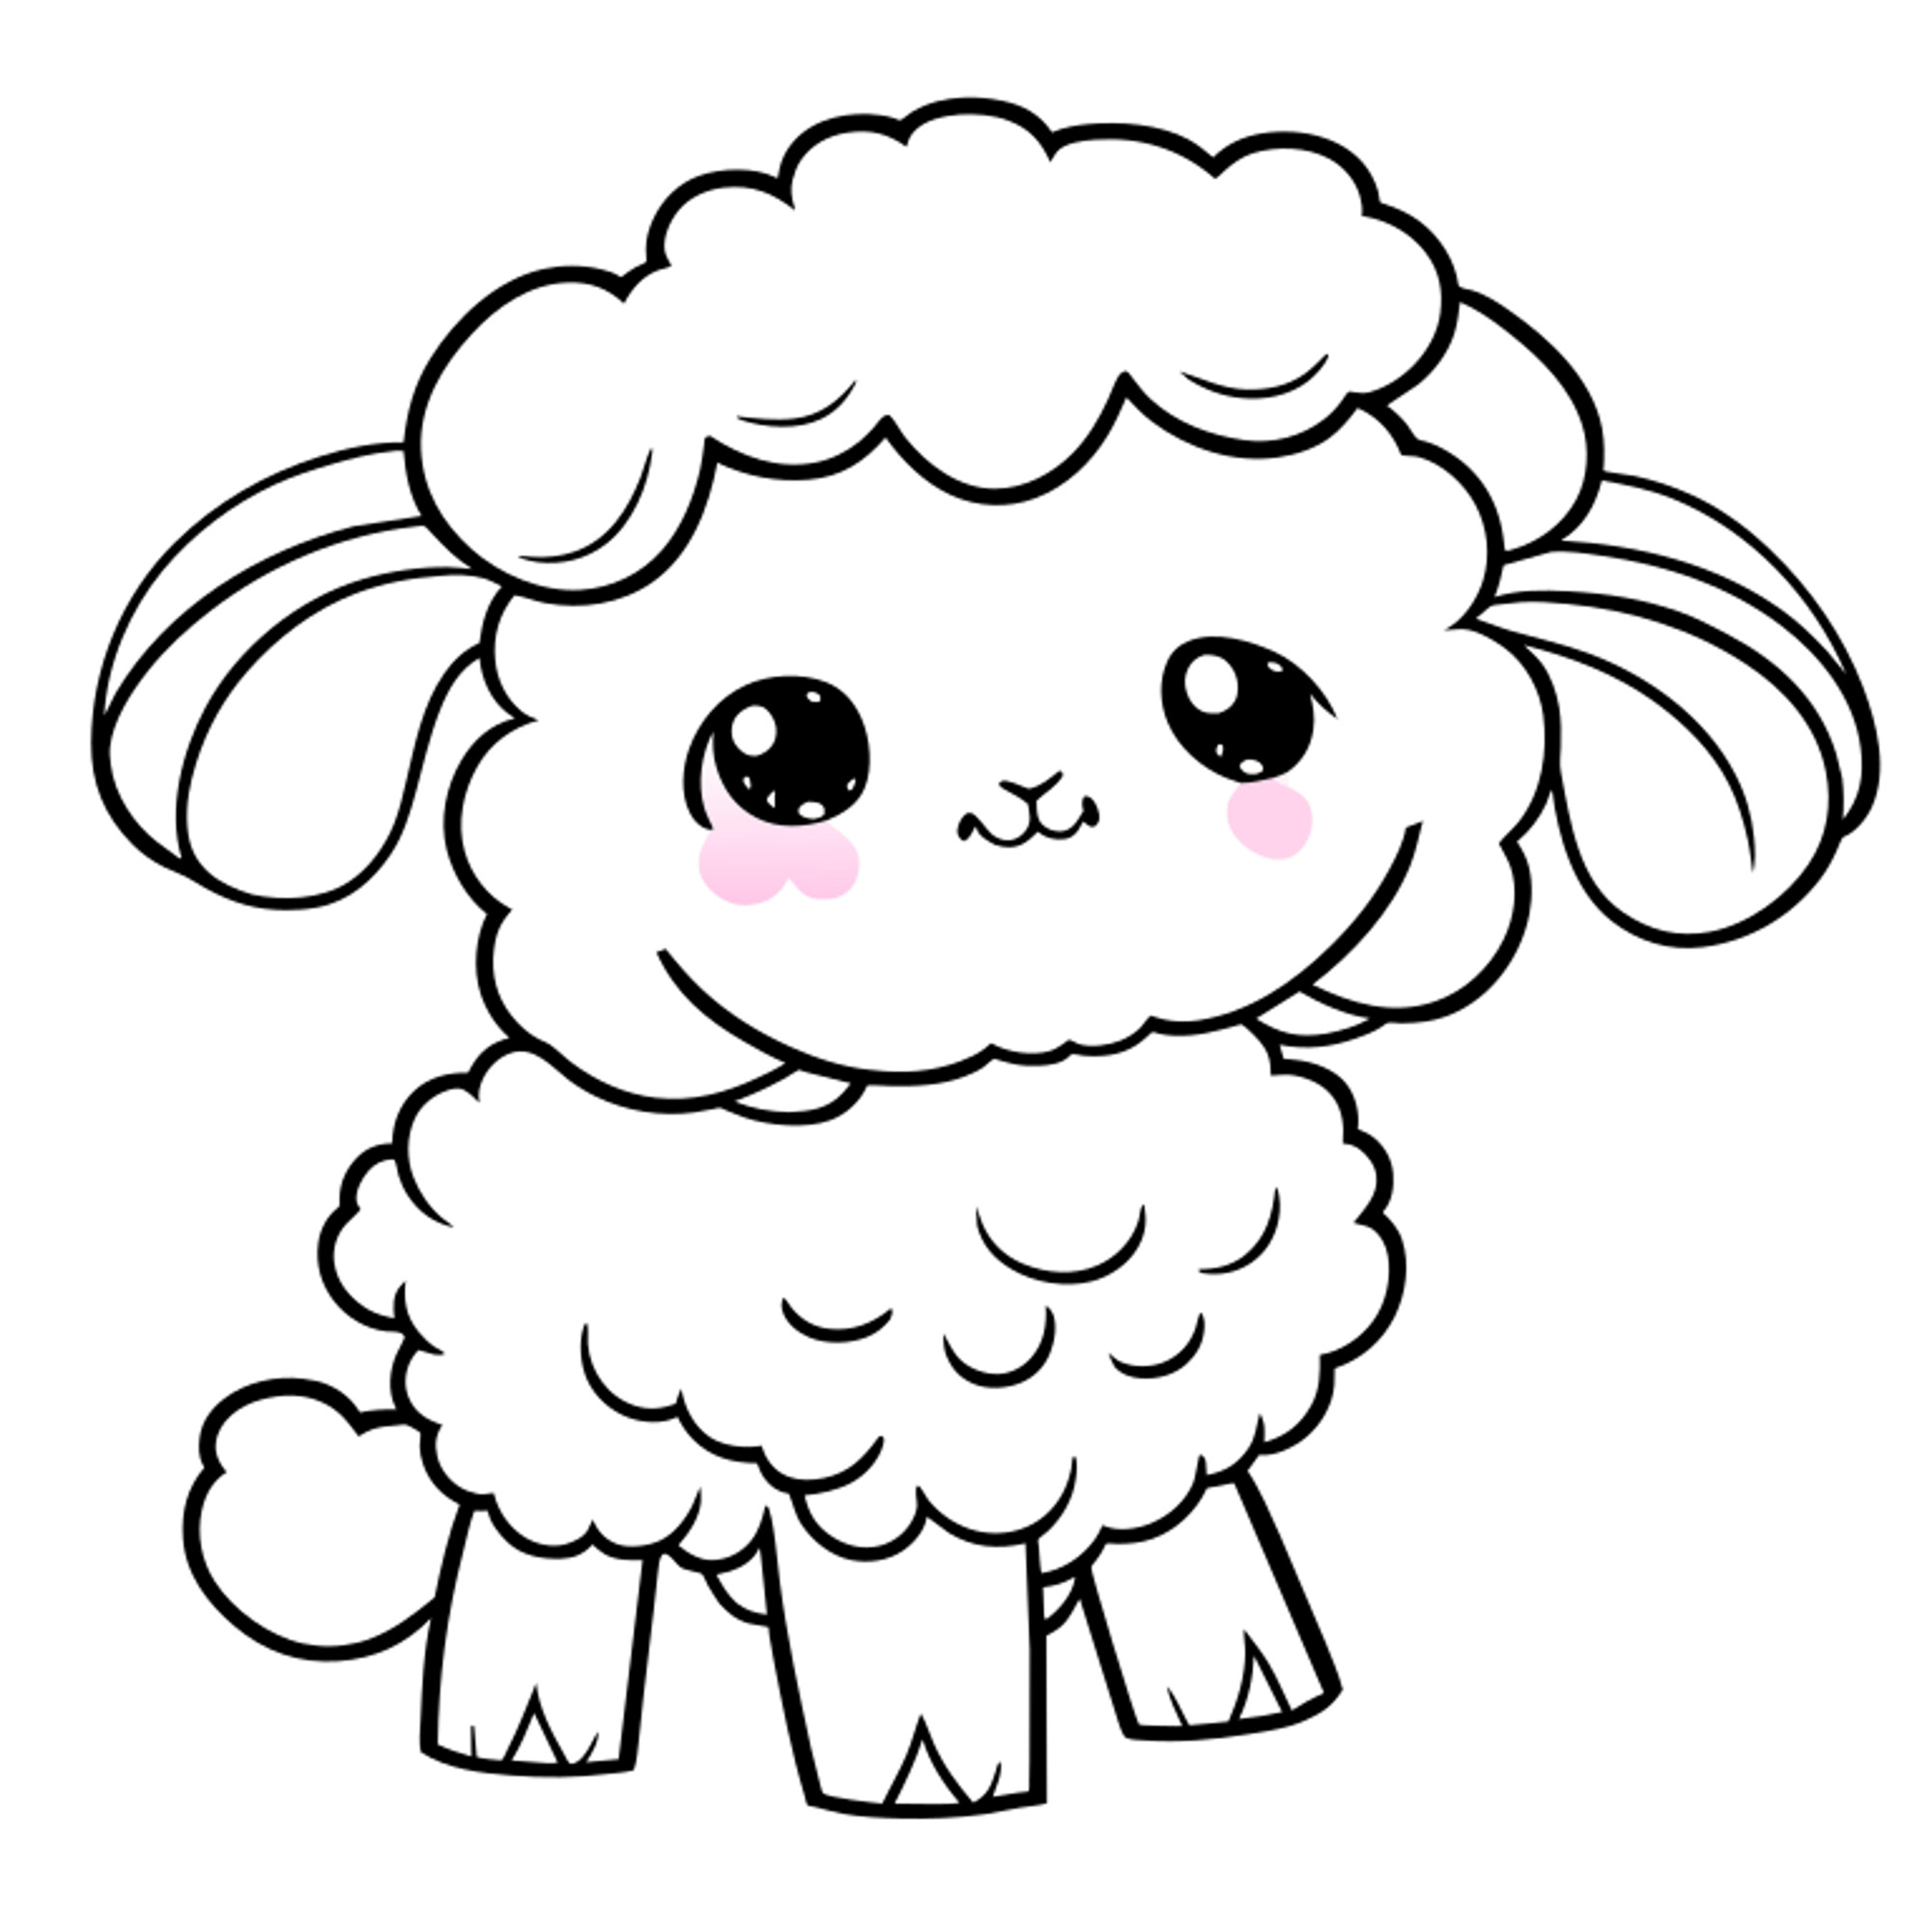 Раскраска для детей: милая овечка